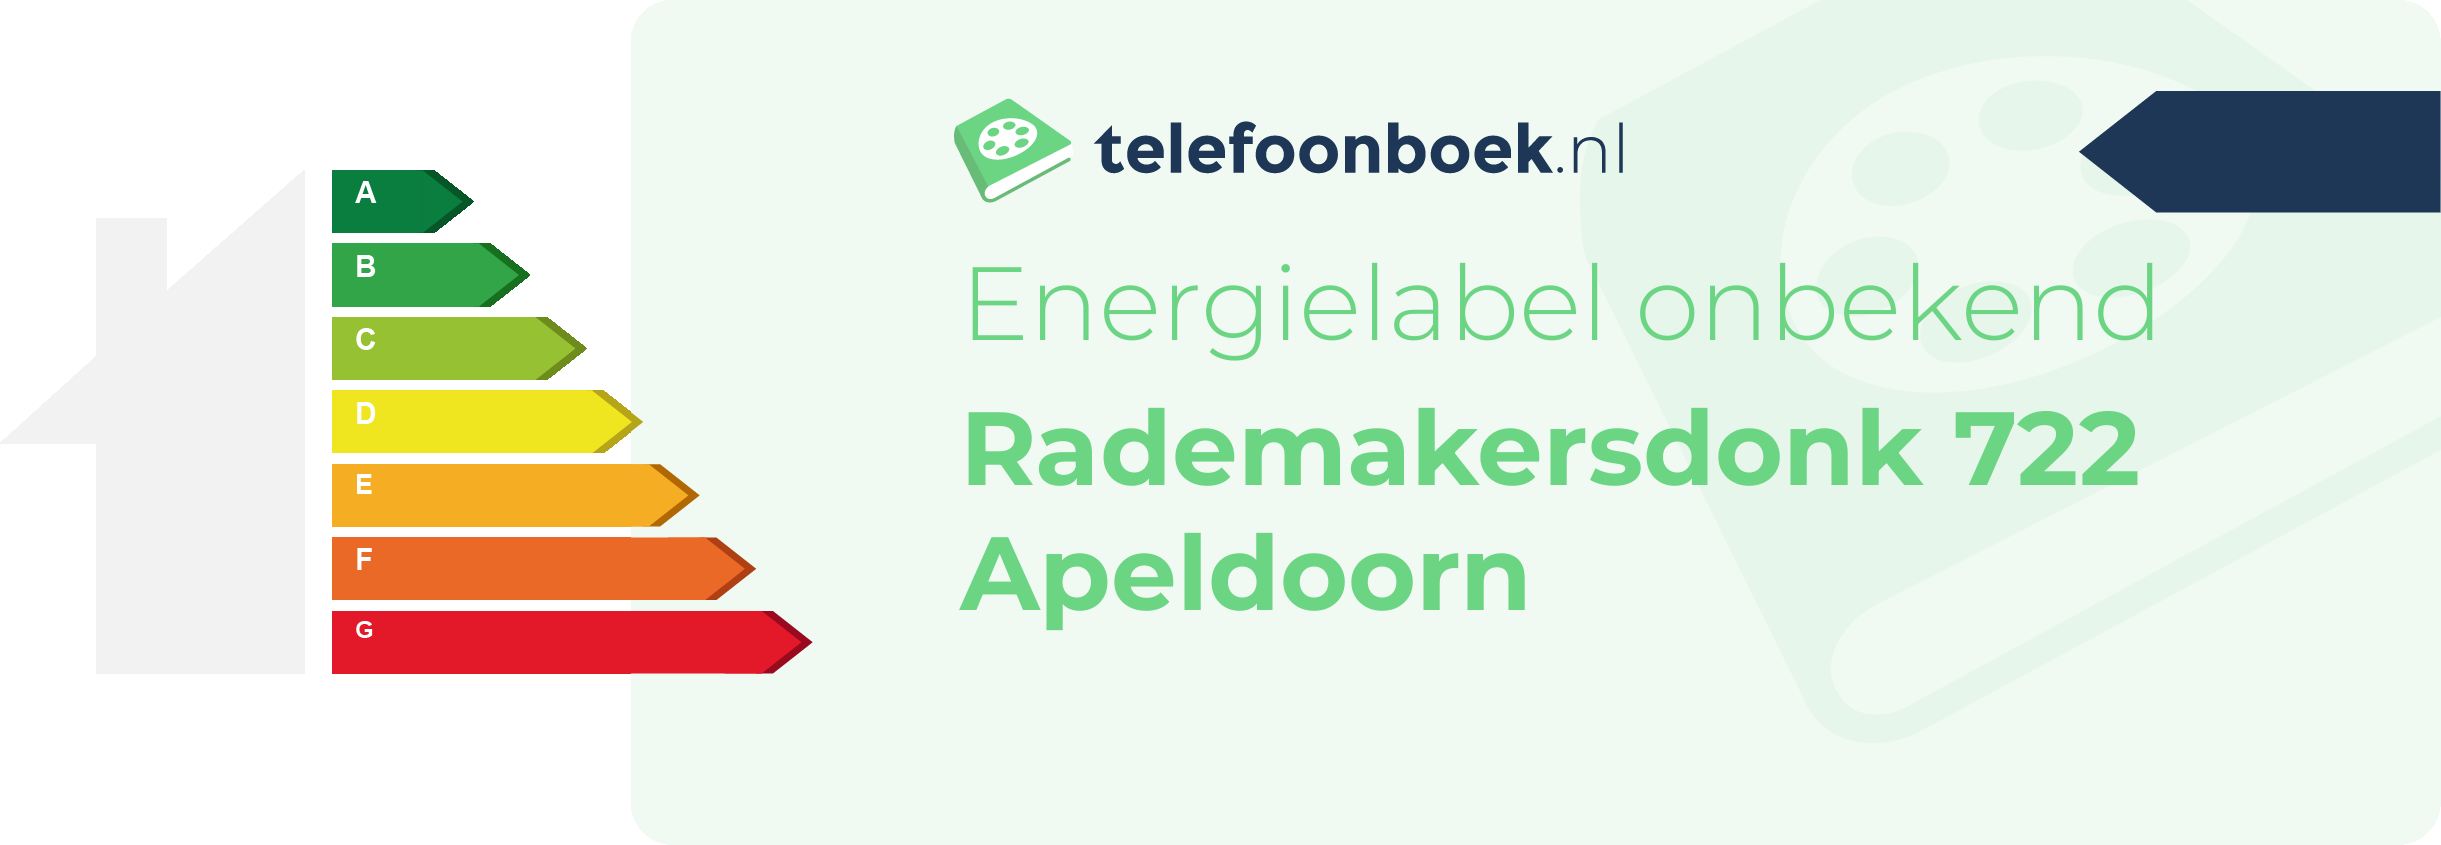 Energielabel Rademakersdonk 722 Apeldoorn